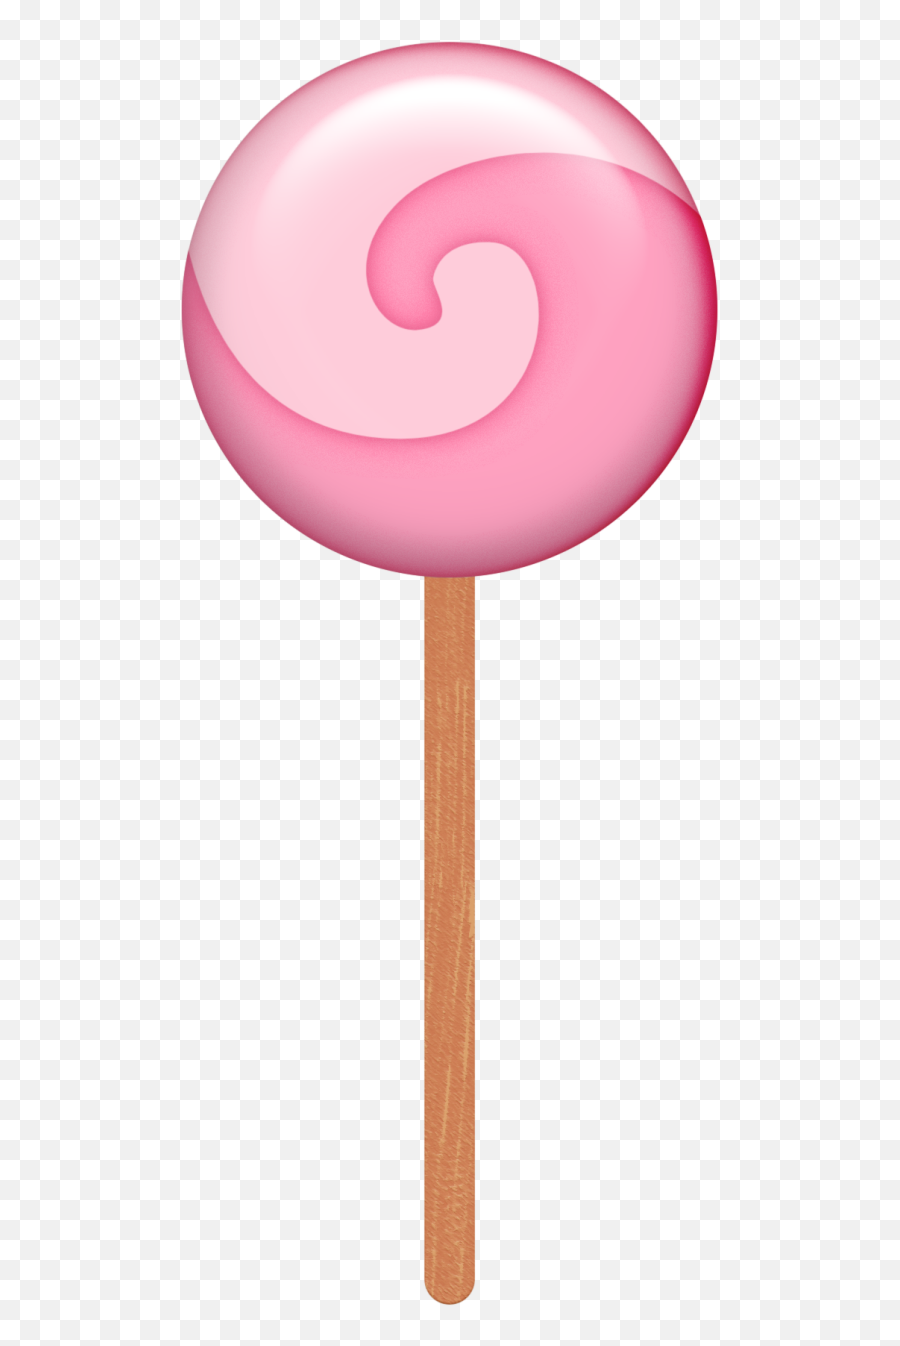 Aw Coc Lollipop - Transparent Background Lollipop Candy Lollipop Clipart Transparent Background Png,Lollipop Transparent